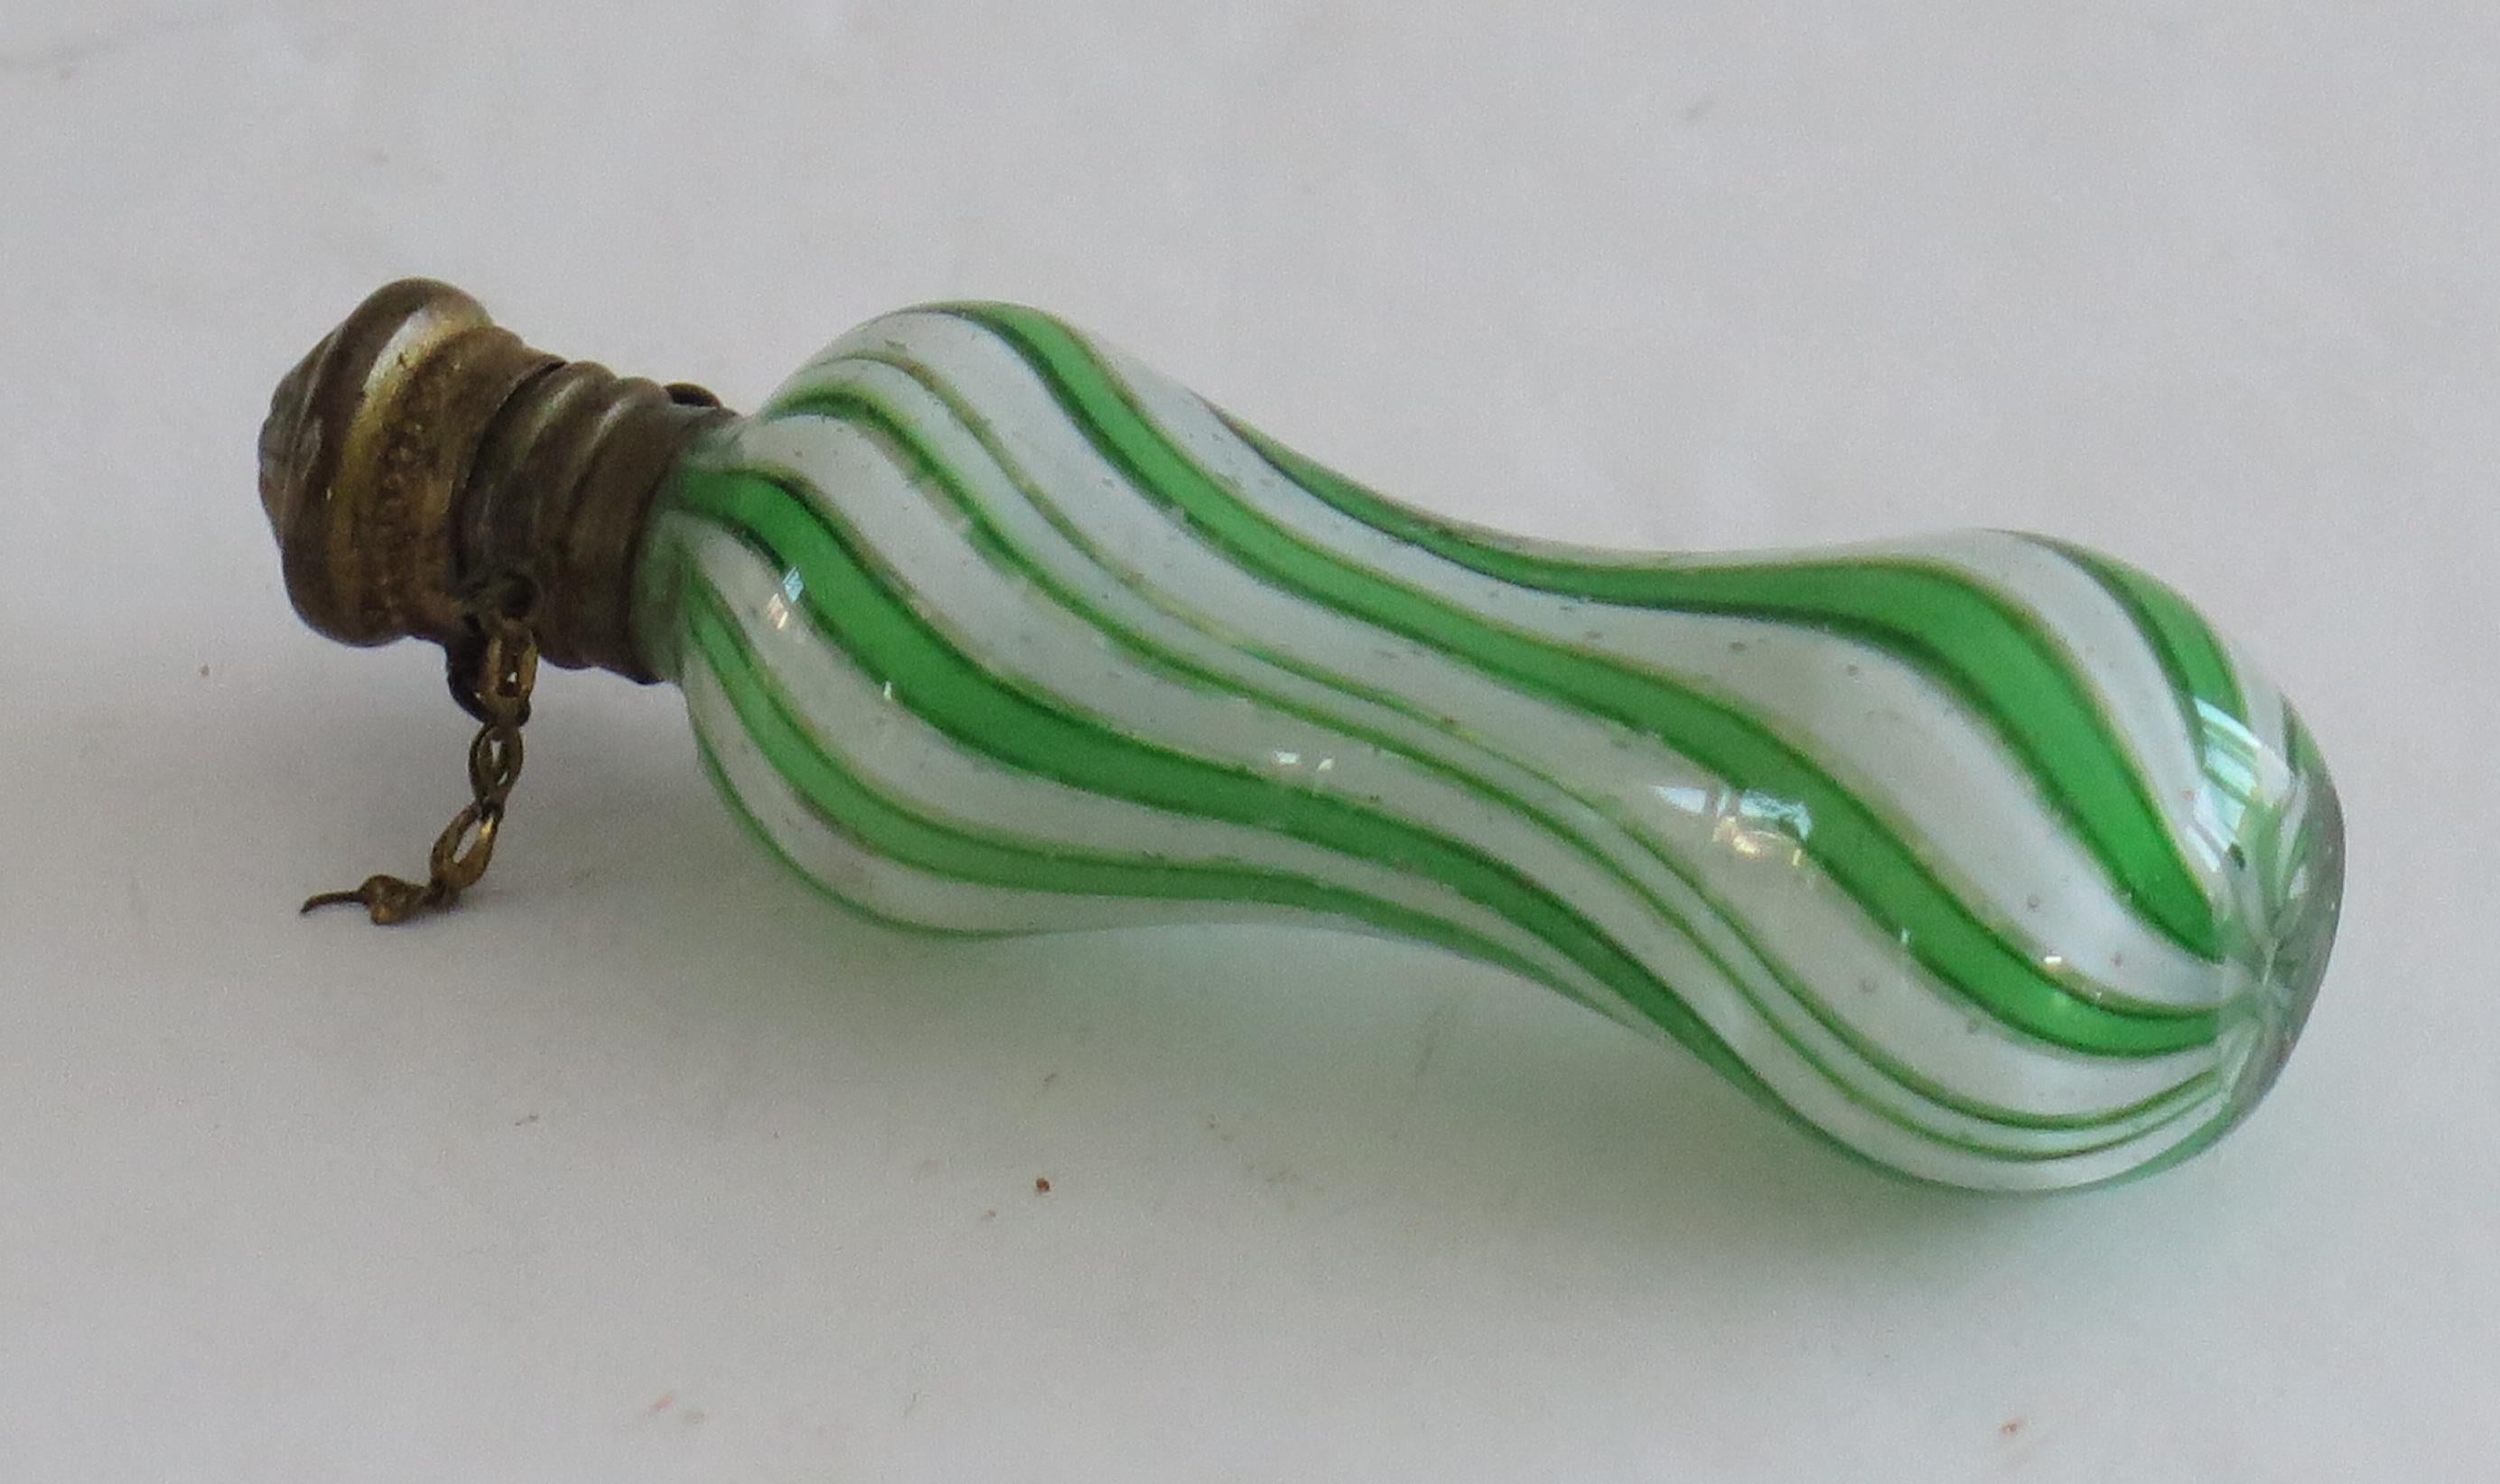 Il s'agit d'un ancien flacon de parfum ou de senteur en verre spiralé, que nous attribuons à Clichy, France, et qui a été fabriqué vers 1850.

La bouteille est faite à la main d'un latticino vert et blanc avec des rayures tourbillonnantes ou en